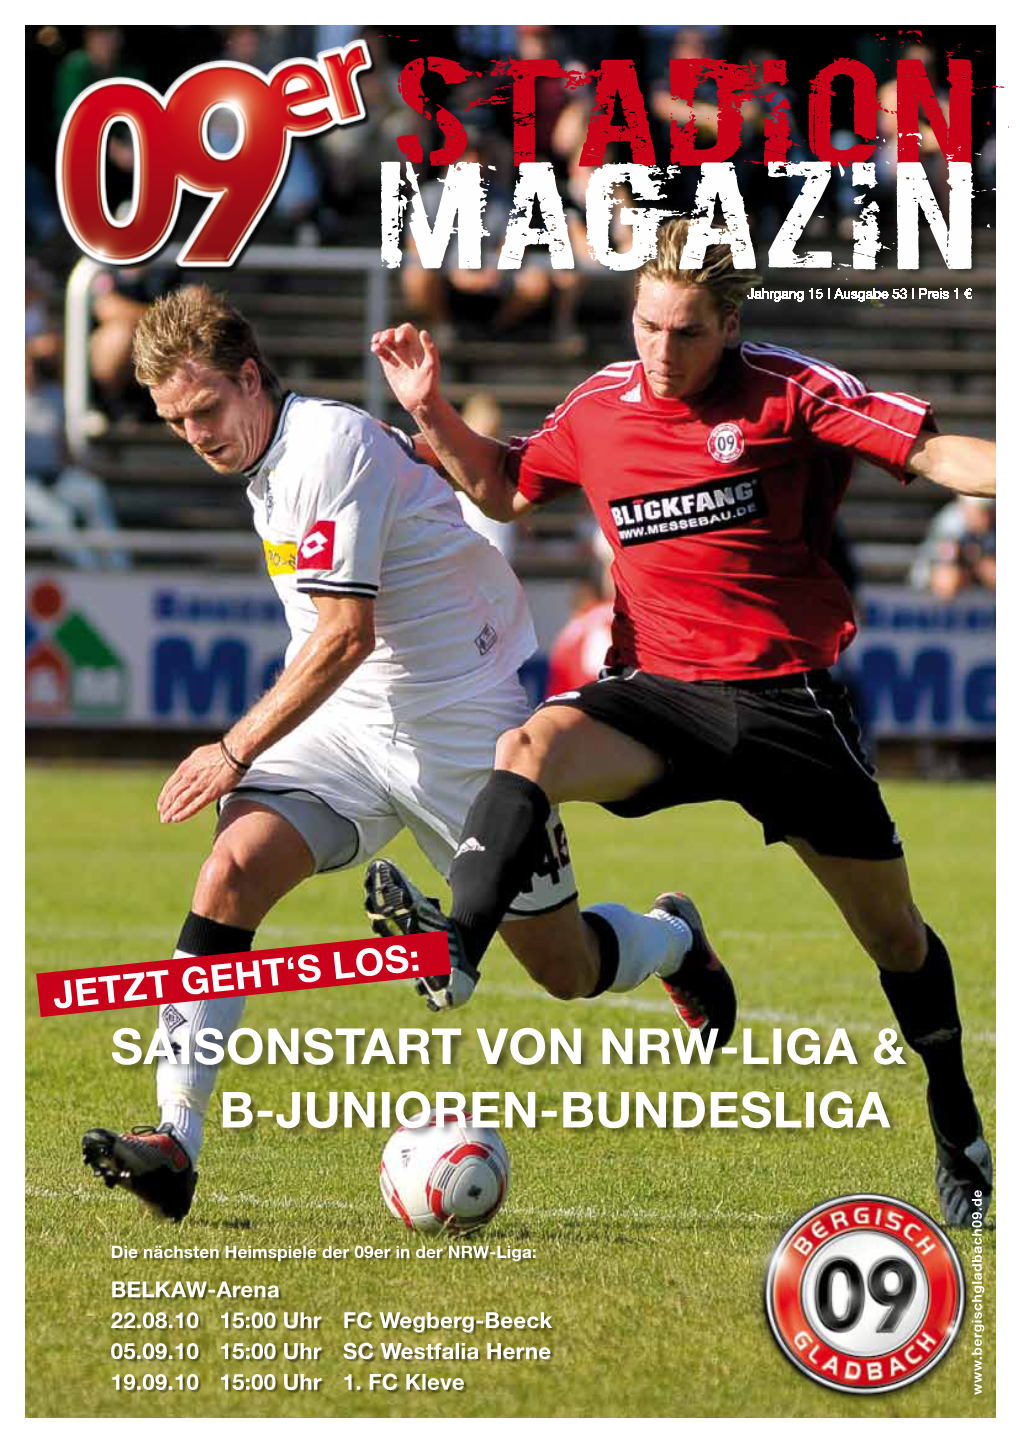 Saisonstart Von Nrw-Liga & B-Junioren-Bundesliga